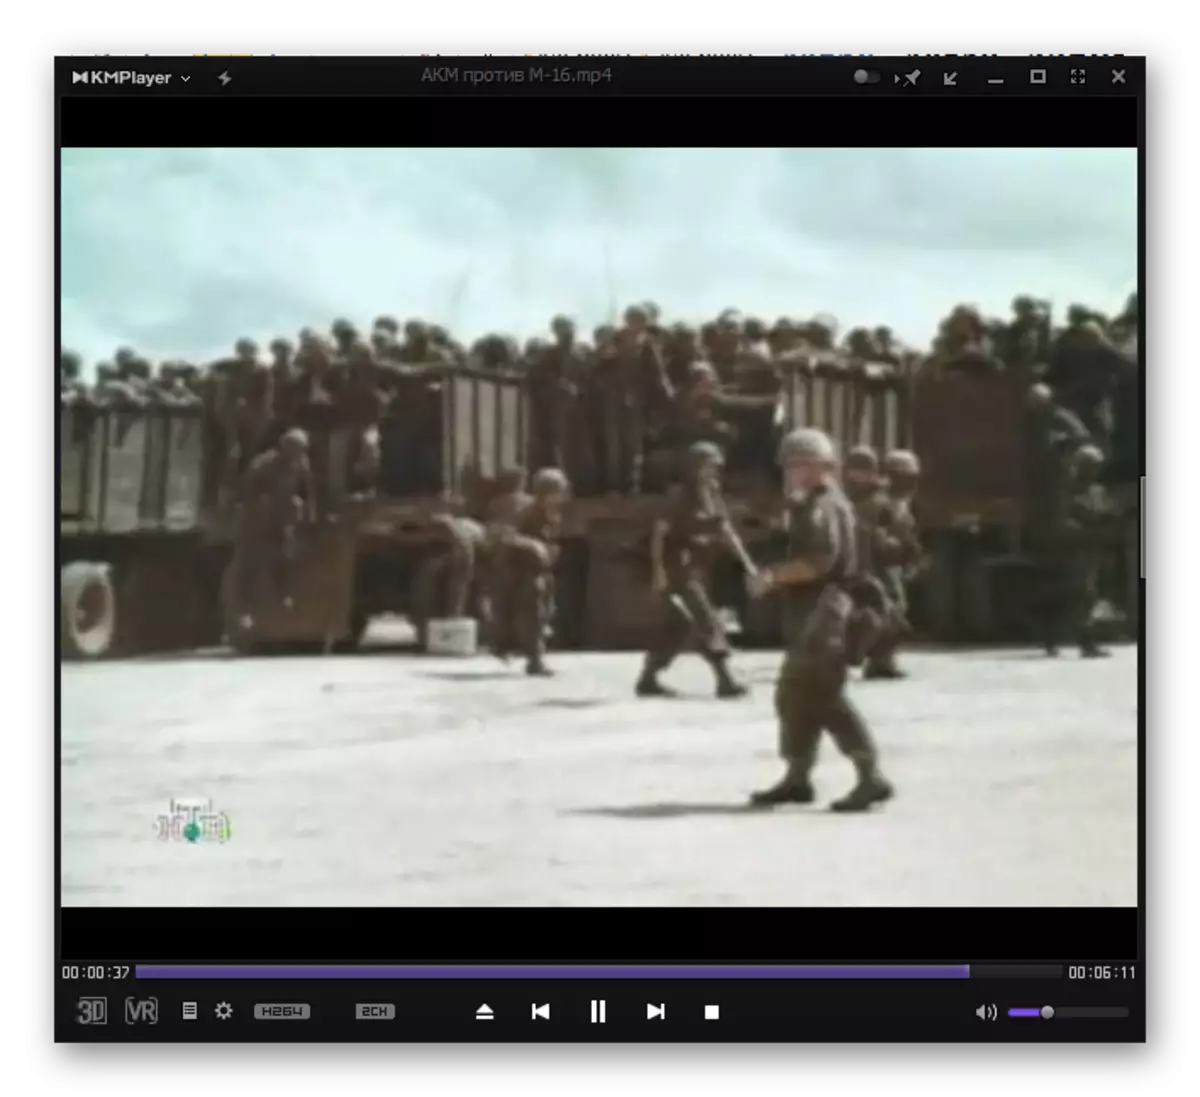 Reproducción del archivo de video MP4 en el programa KMPlayer